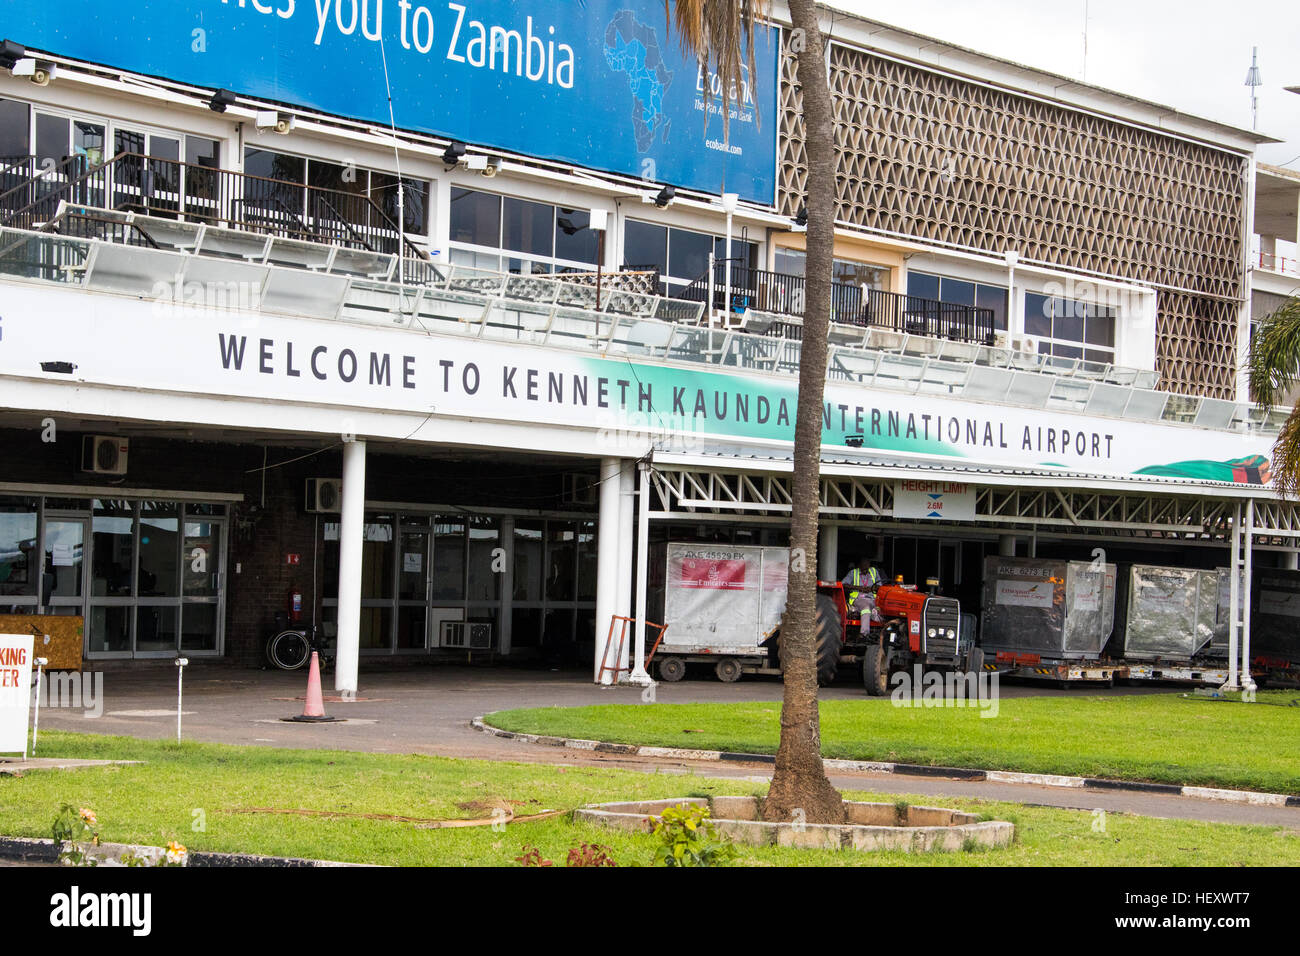 Kenneth Kaunda International Airport, Lusaka, Zambia Stock Photo